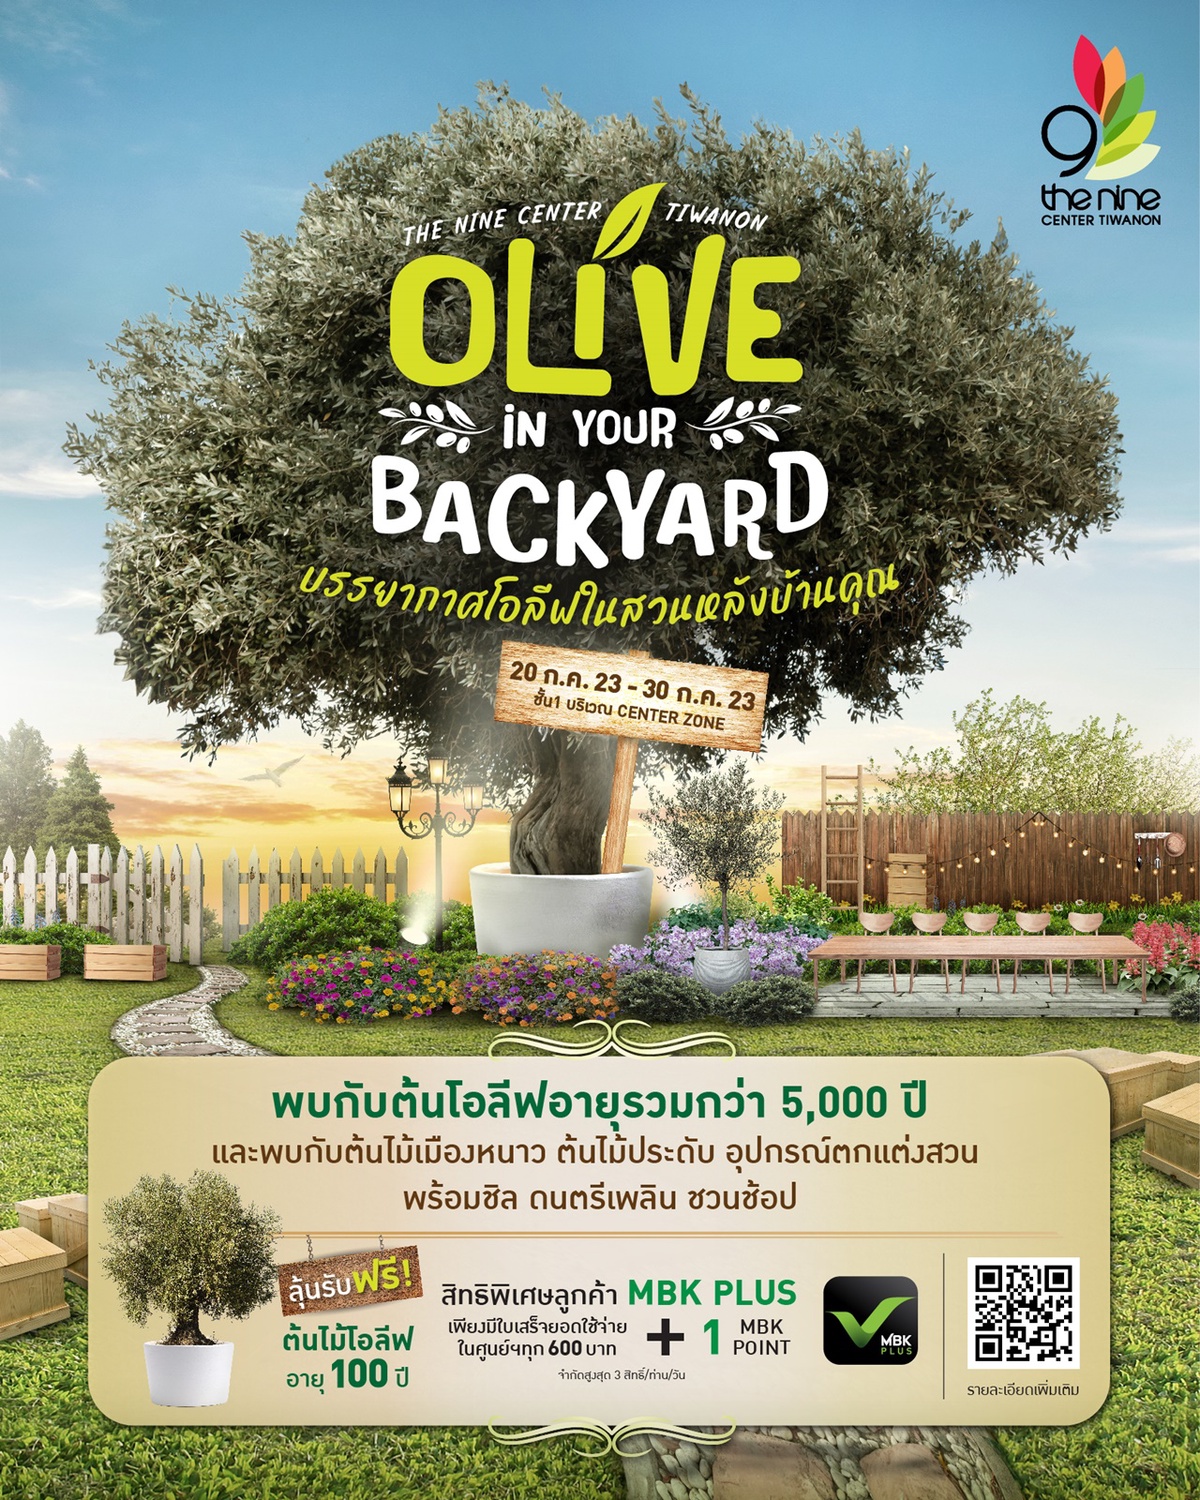 เดอะไนน์ เซ็นเตอร์ ติวานนท์ พาชมเสน่ห์ต้นมะกอกโอลีฟ ในงาน OLIVE IN YOUR BACKYARD เต็มอิ่ม 10 วันเต็ม !! เริ่ม 20 ก.ค.